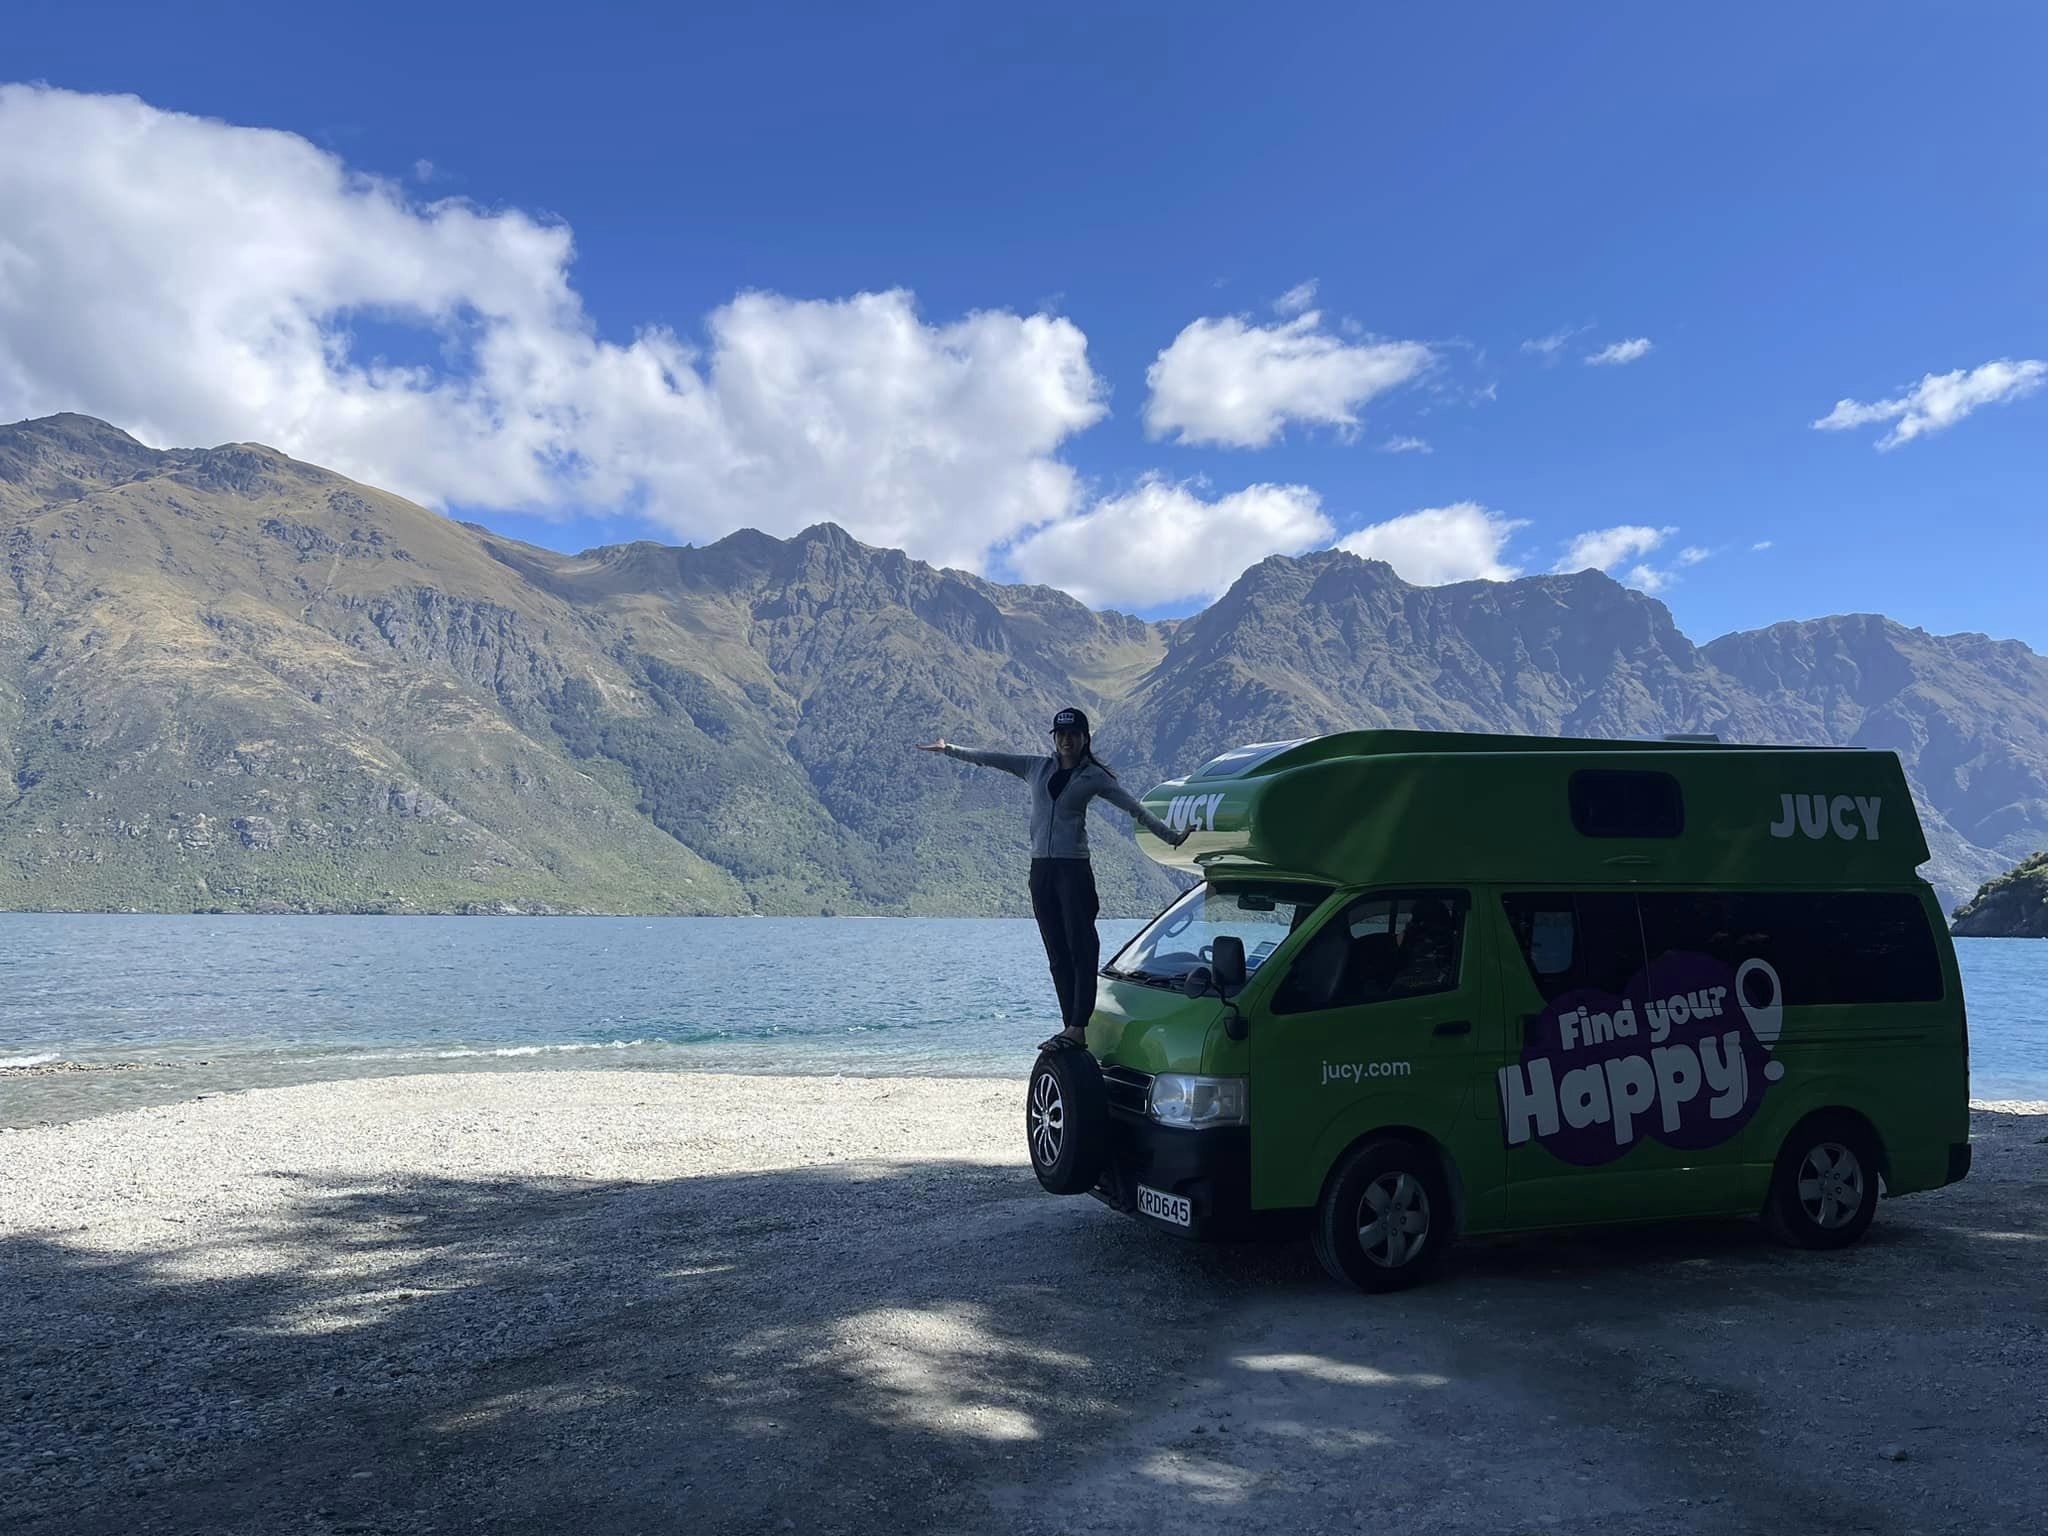 30 ngày rong ruổi khắp New Zealand: Gia đình nhỏ chọn style đi bụi, trên con xe Campervan đầy đủ ga nệm và bếp núc - Ảnh 1.